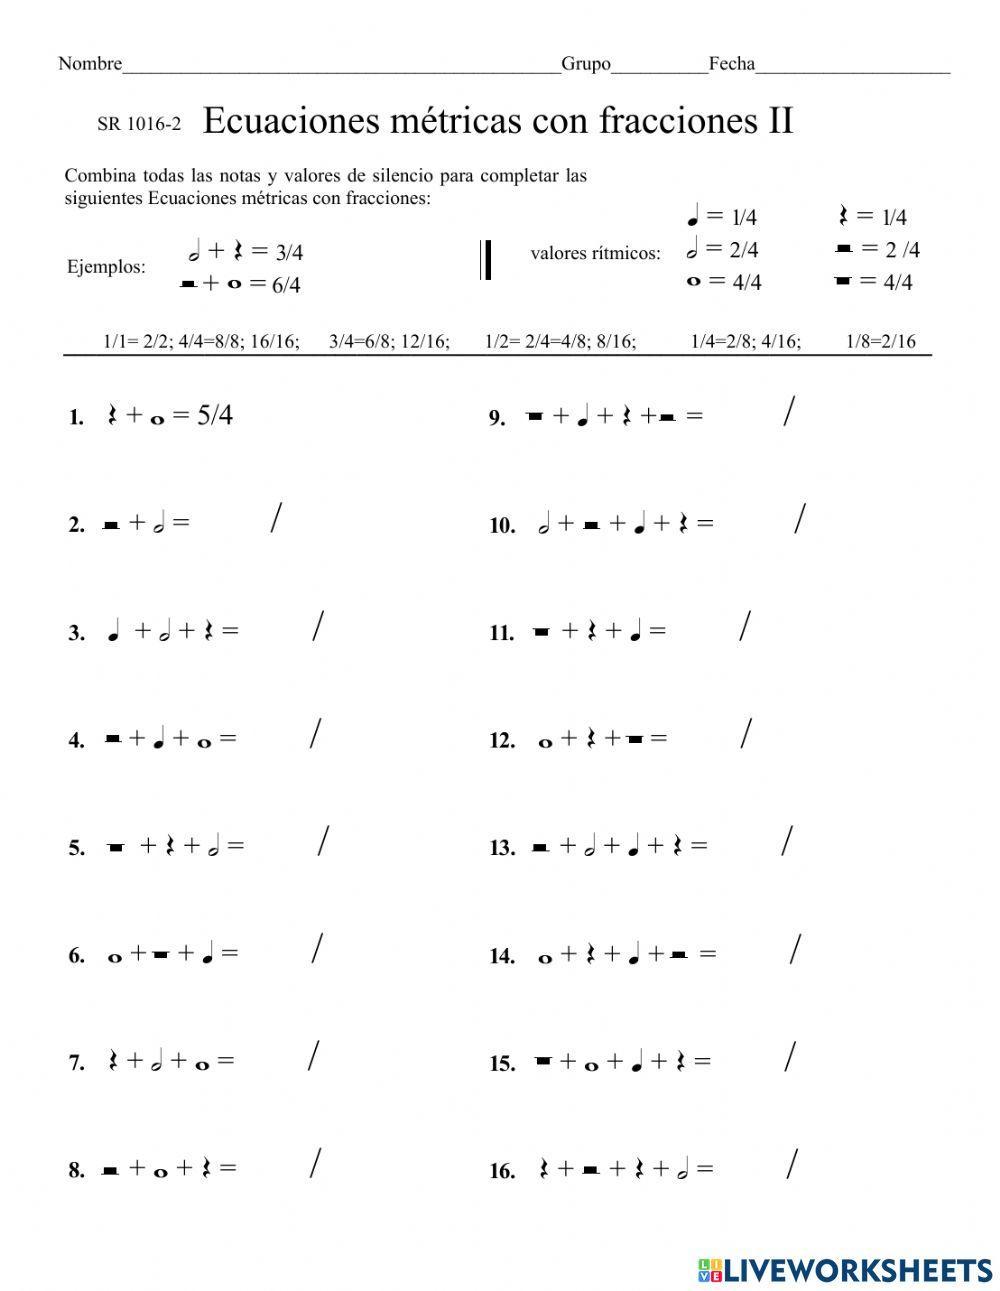 Ecuaciones ritmicas con fracciones I y II